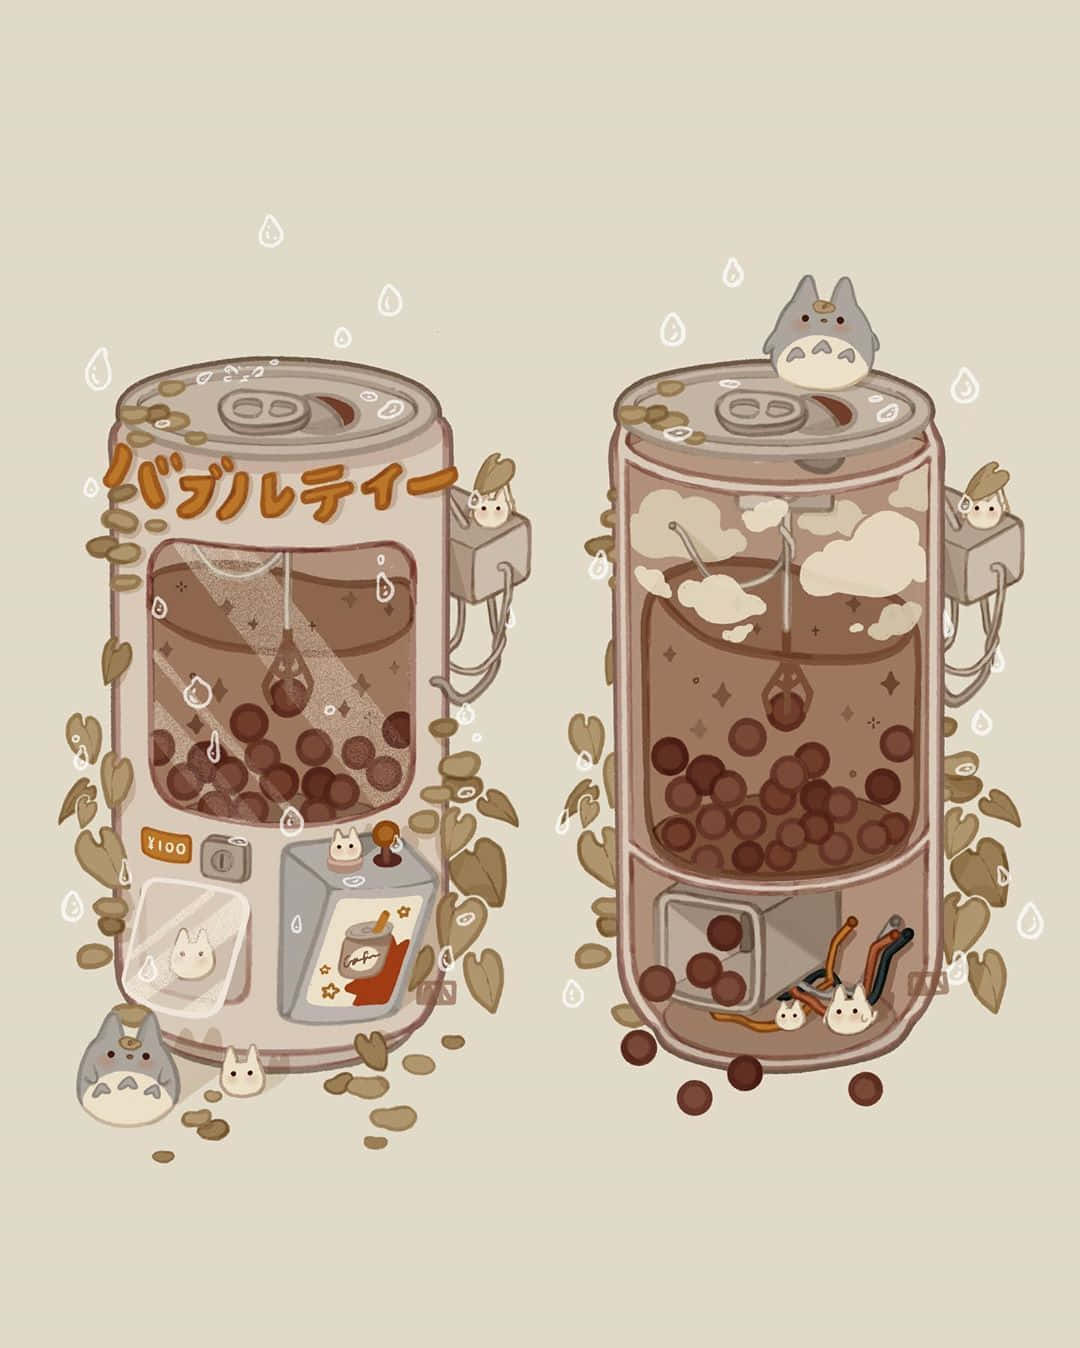 to kaffemaskiner med en kat indeni Wallpaper